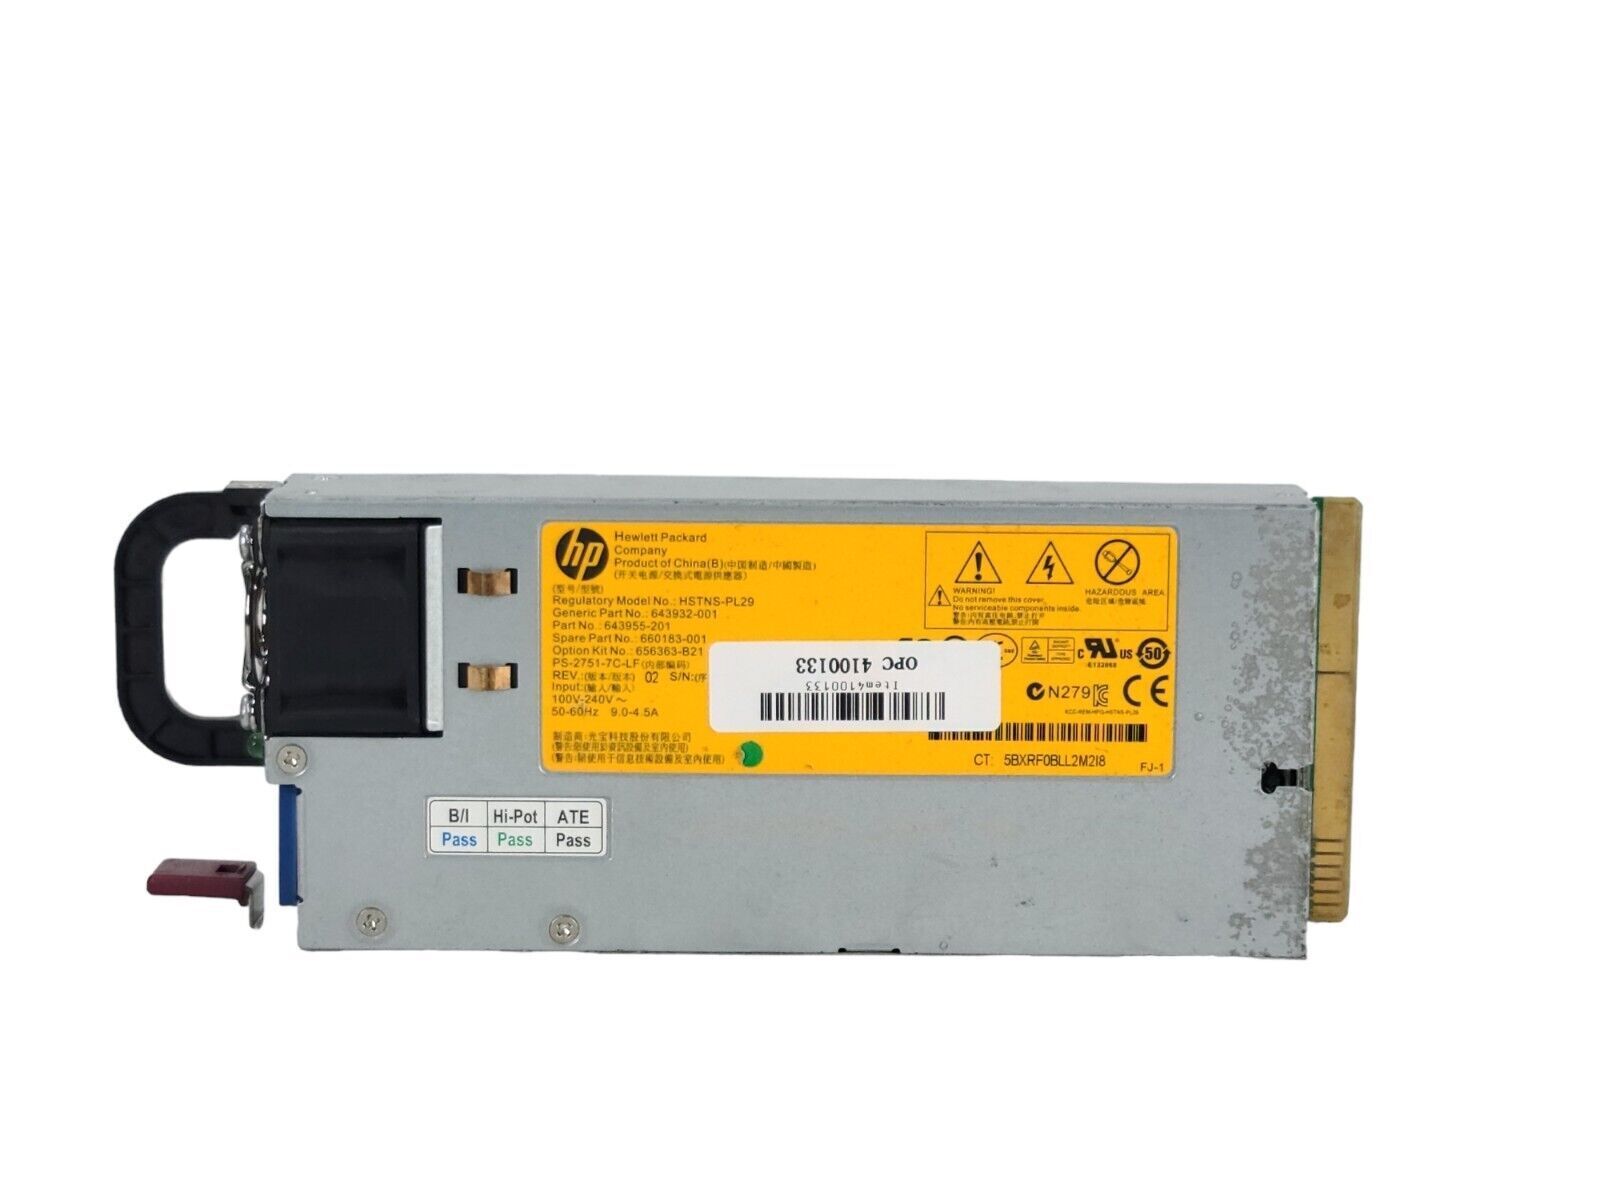 HP HSTNS-PL29 643932-001 750 Watt Server Power Supply